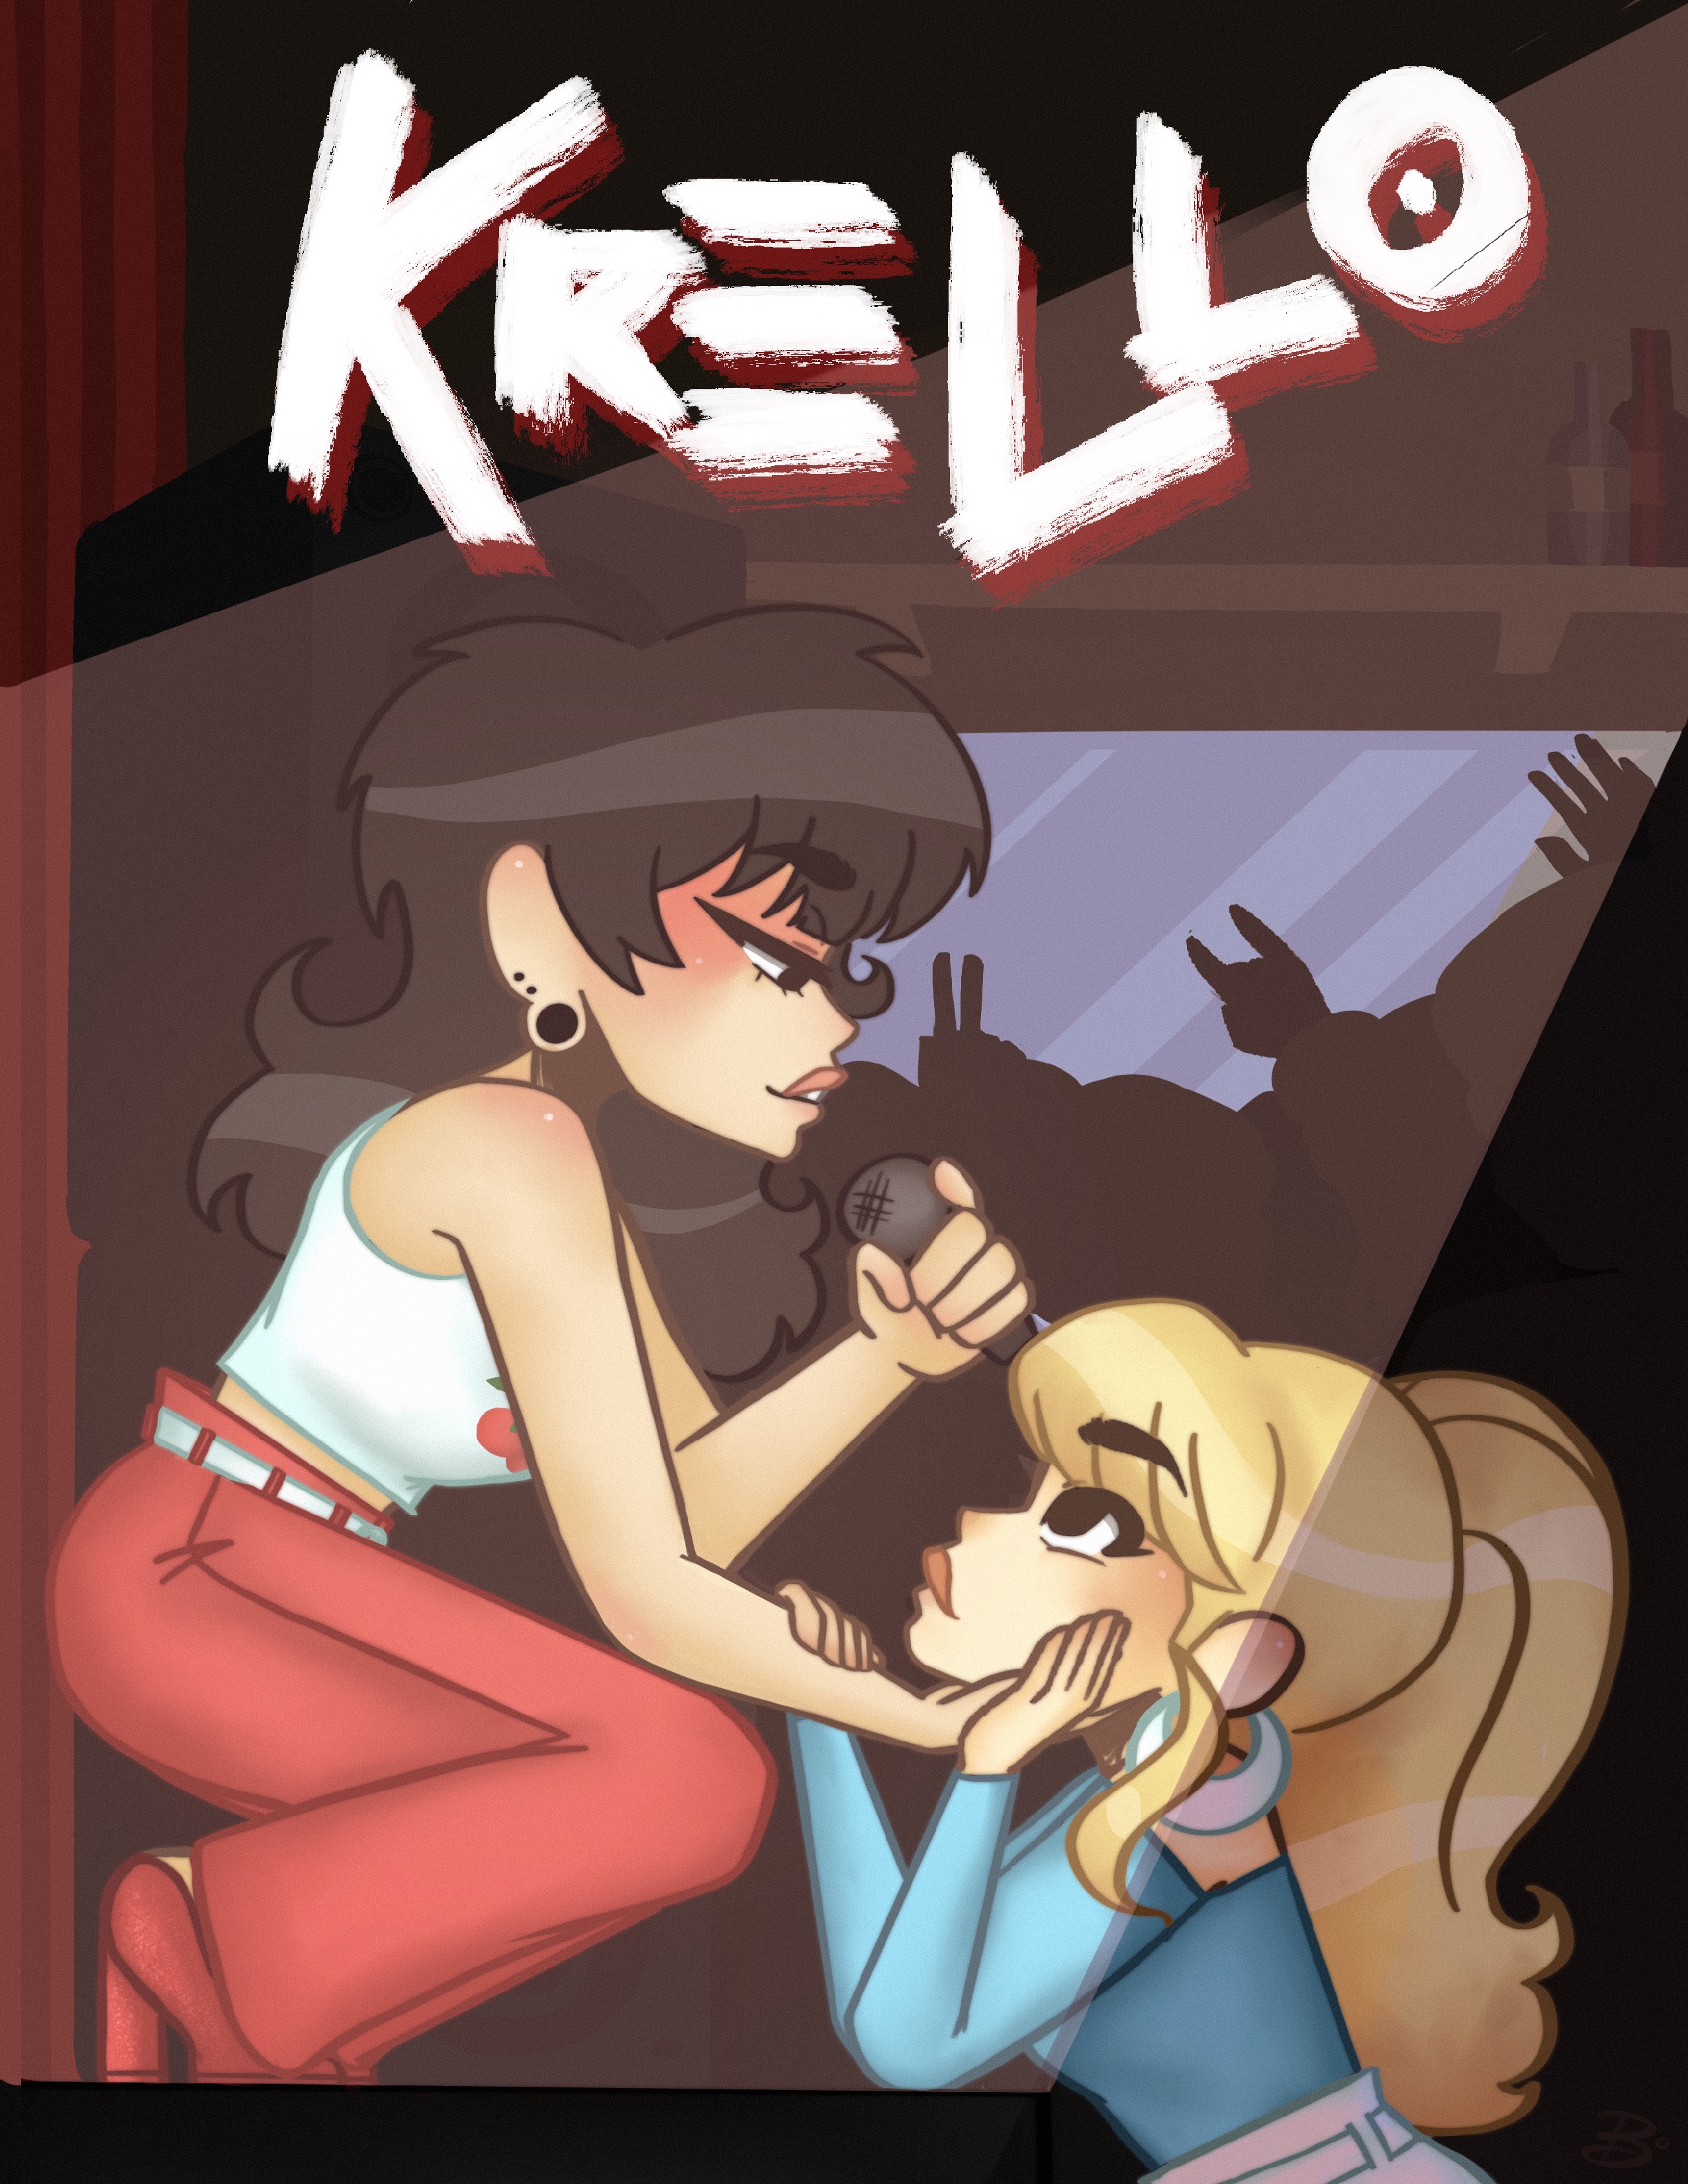 KRELLO Issue 003